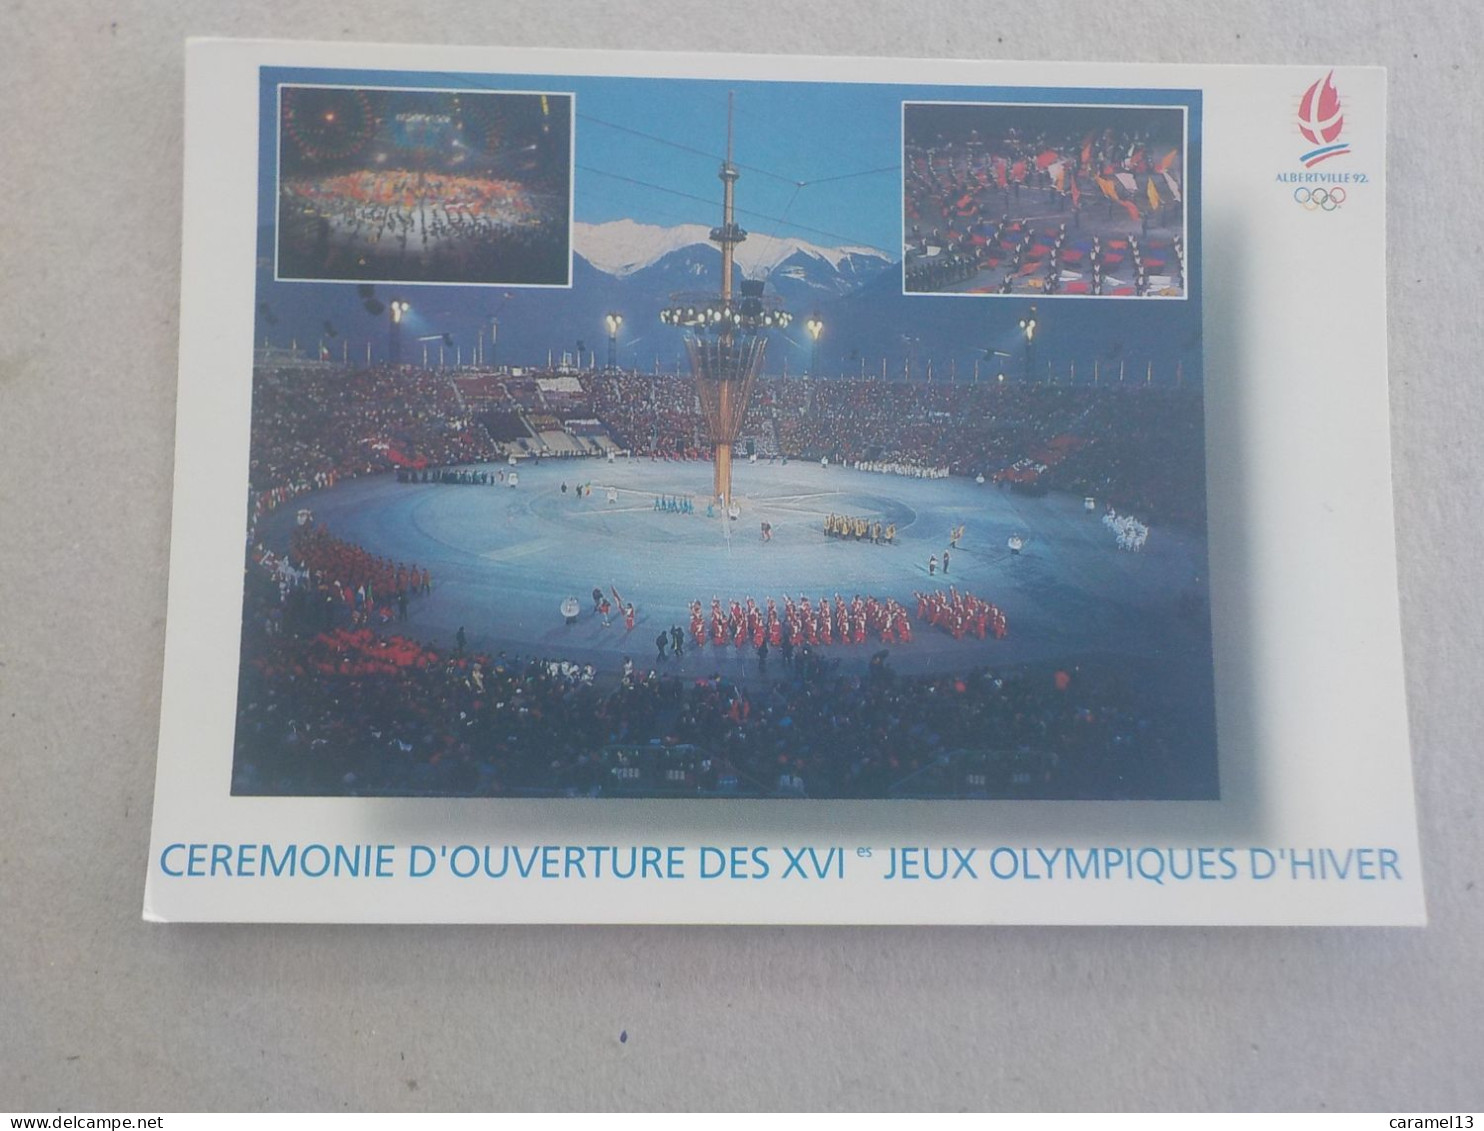 CPSM -  AU PLUS RAPIDE - JEUX OLYMPIQUES CEREMONIE D OUVERTURE DES JEUX D HIVERS ALBERVILLE 92   -  VOYAGEE NON TIMBREE - Jeux Olympiques